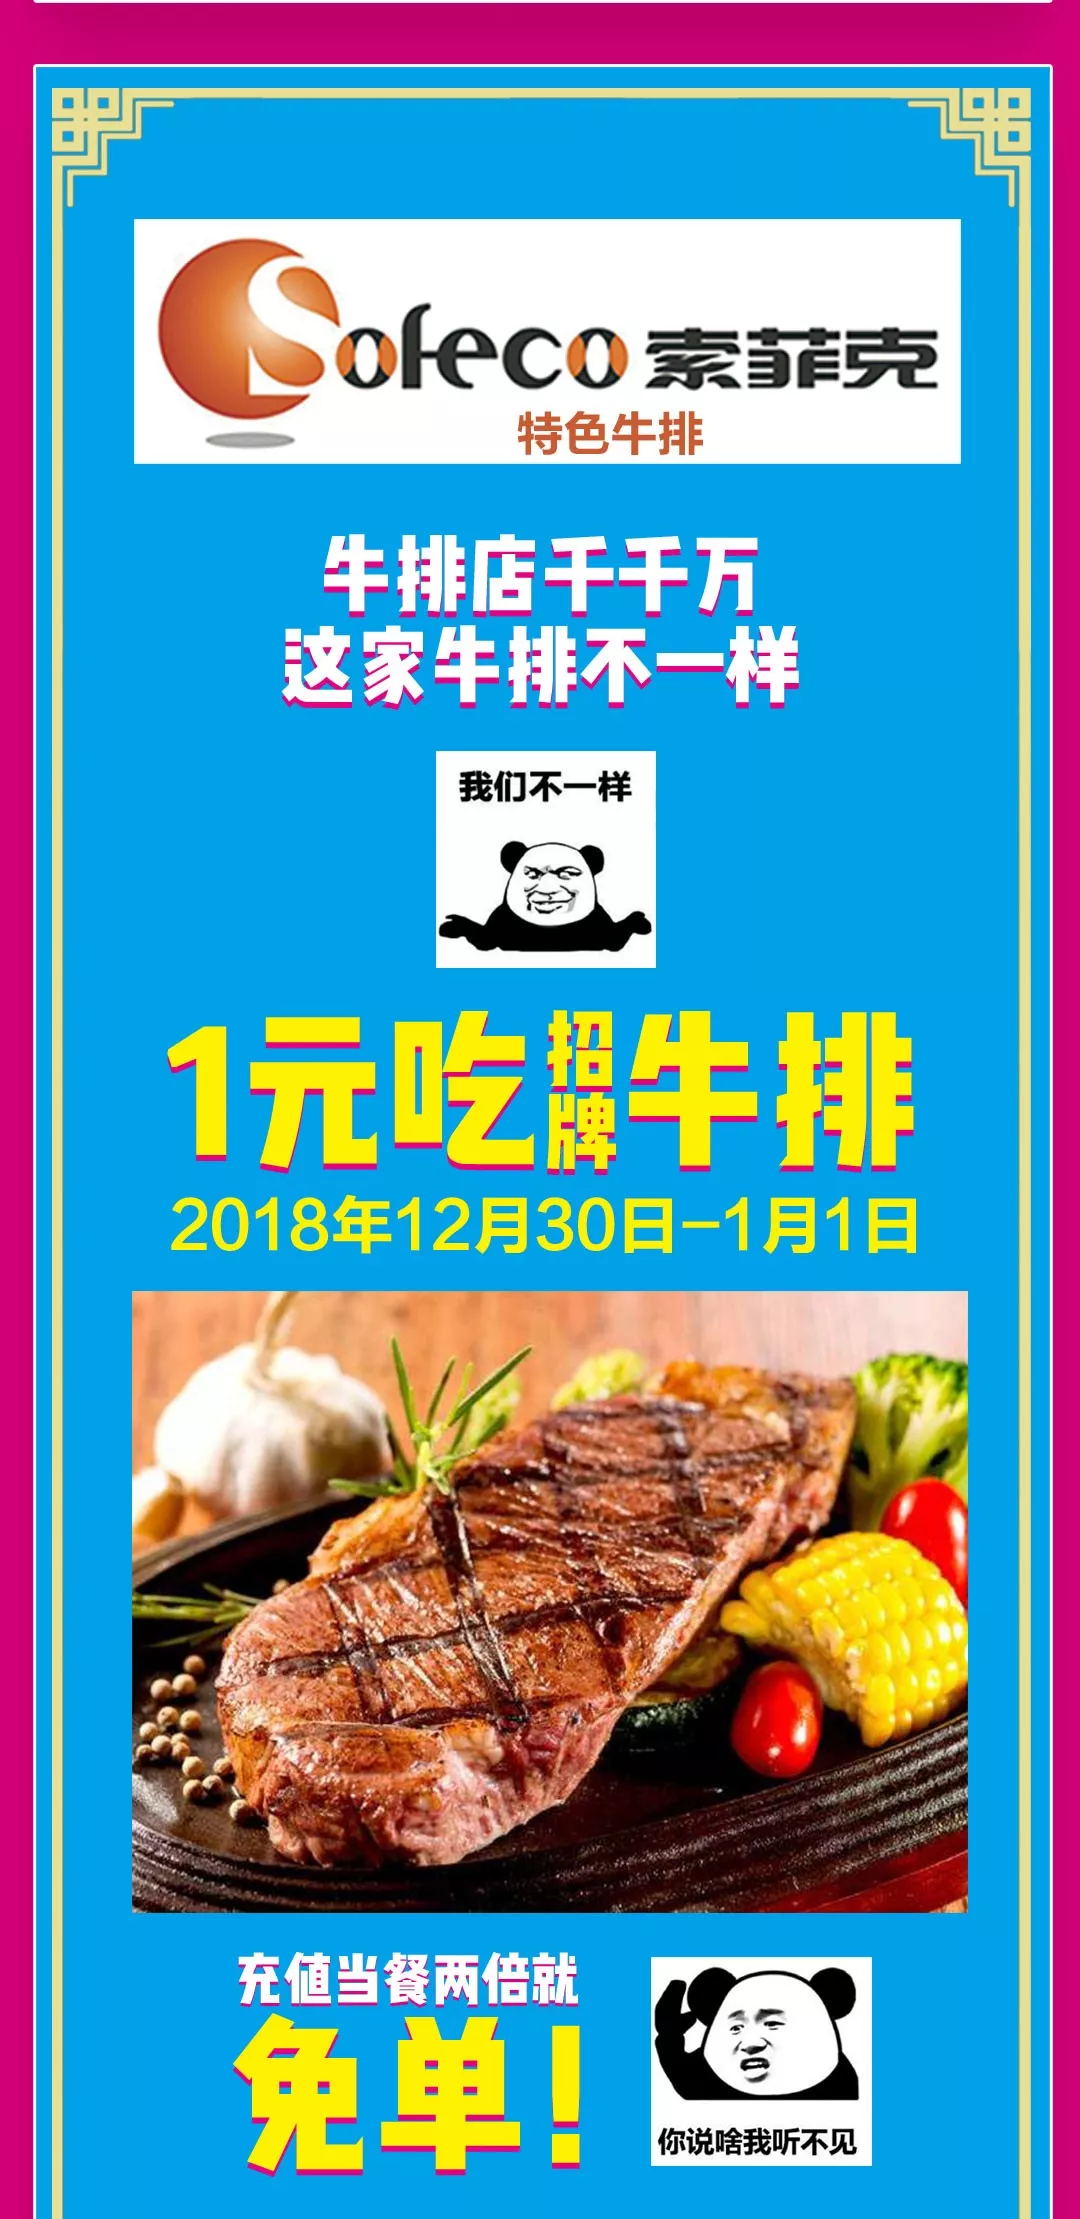 13_看图王.web.jpg